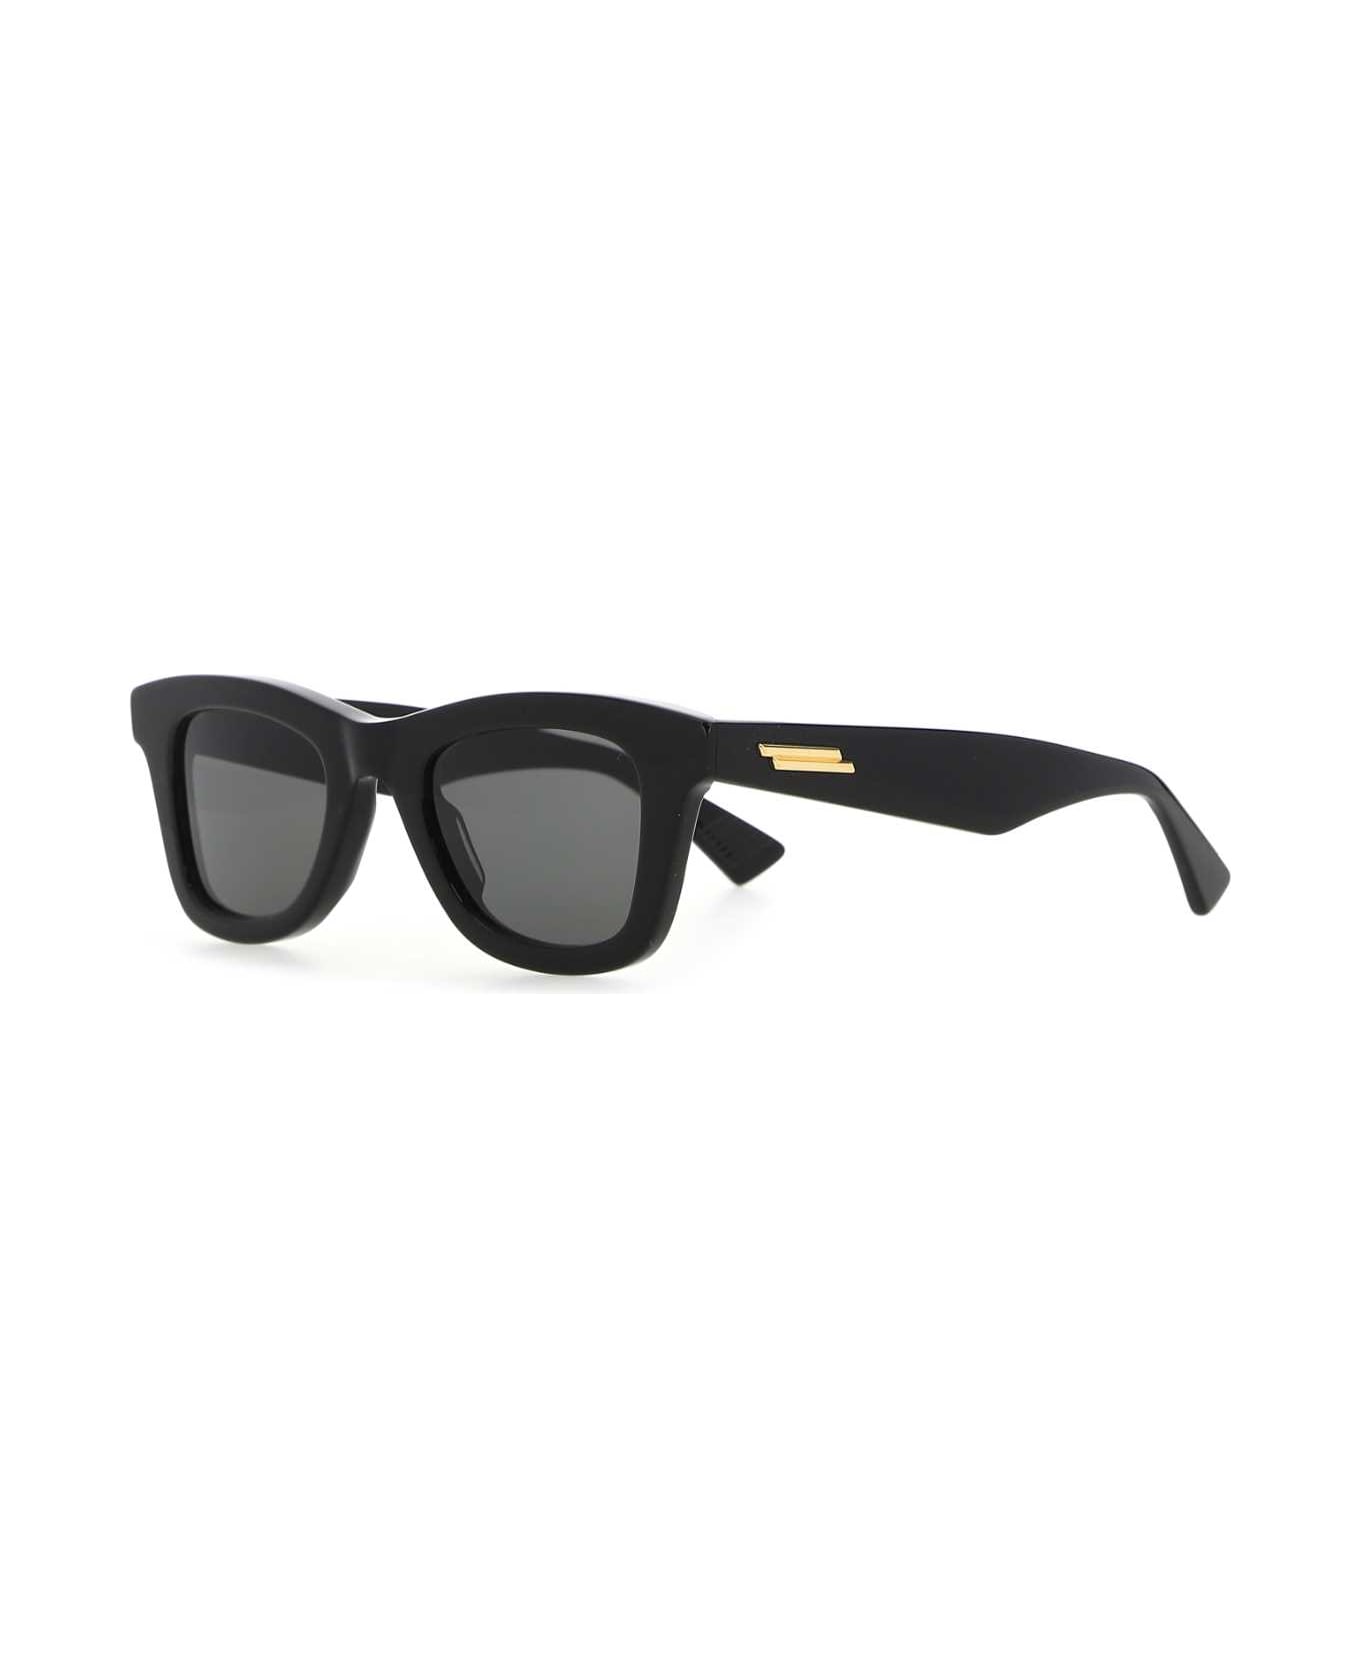 Bottega Veneta Black Acetate Classic Sunglasses - 1049 サングラス